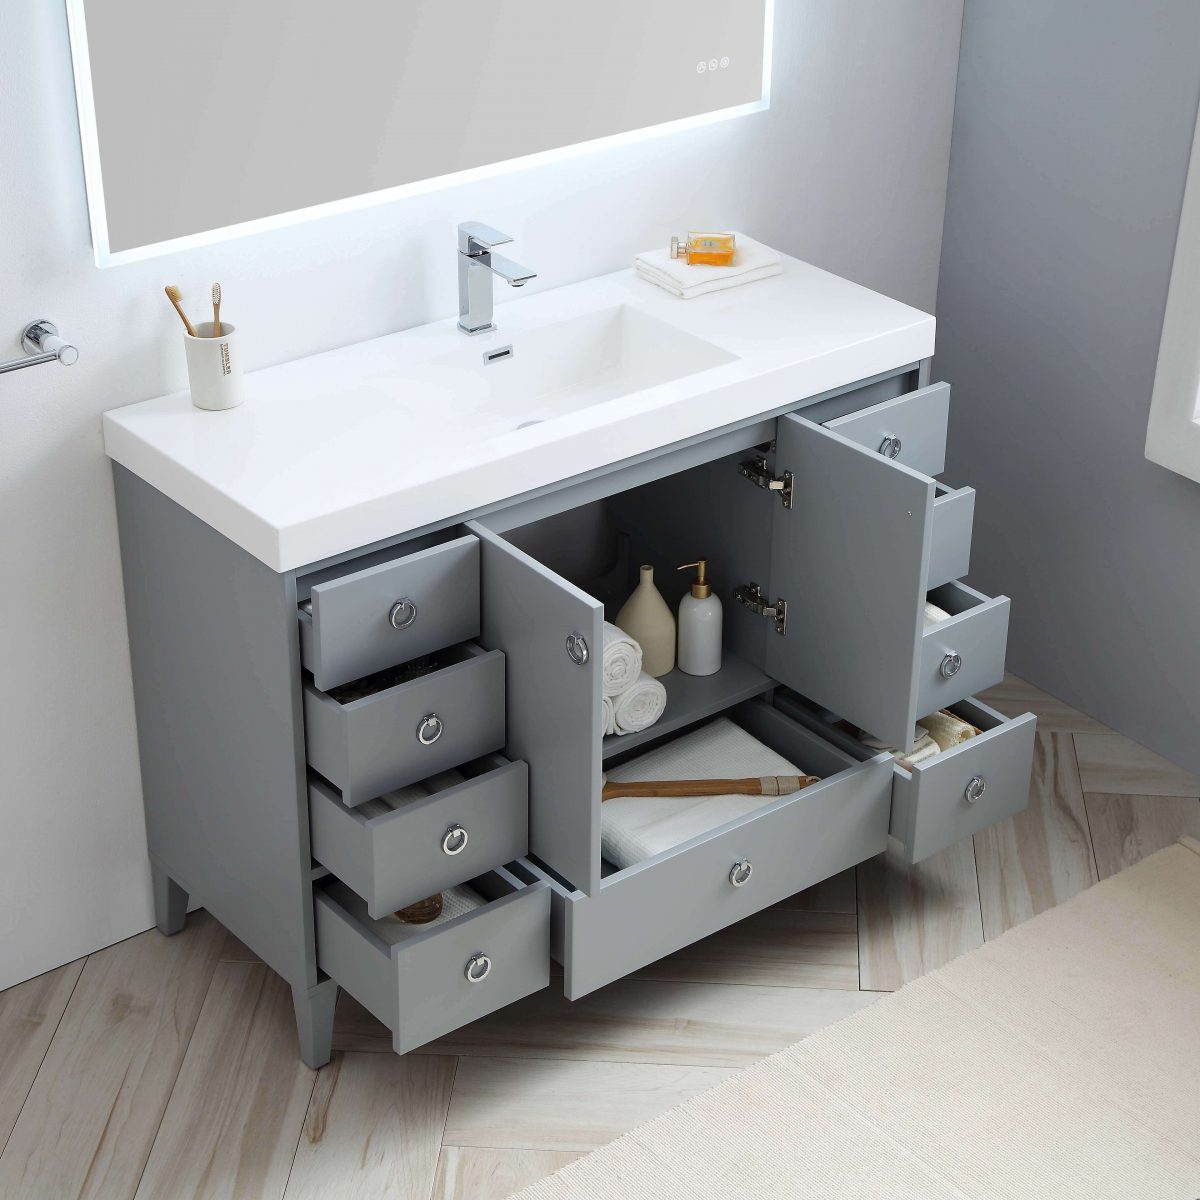 Lyon 48" Bathroom Vanity  #size_48"  #color_metal grey #countertop_acrylic